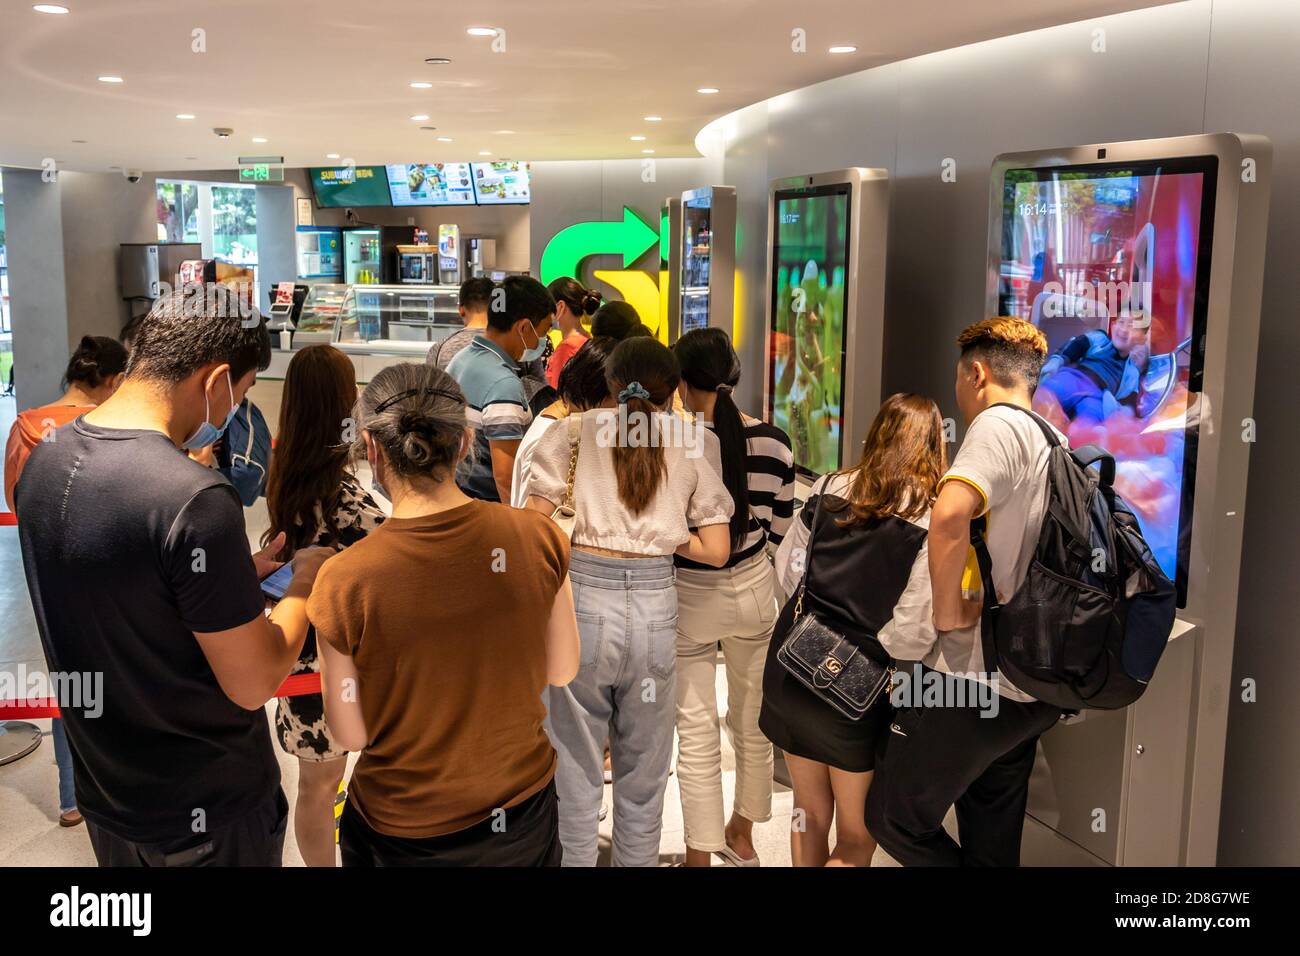 Les voyageurs se promo dans les attractions touristiques de Shanghai, Chine, 13 septembre 2020. L'aquarium océanique de Shanghai et l'Oriental Pearl ont annoncé un demi-prix Banque D'Images